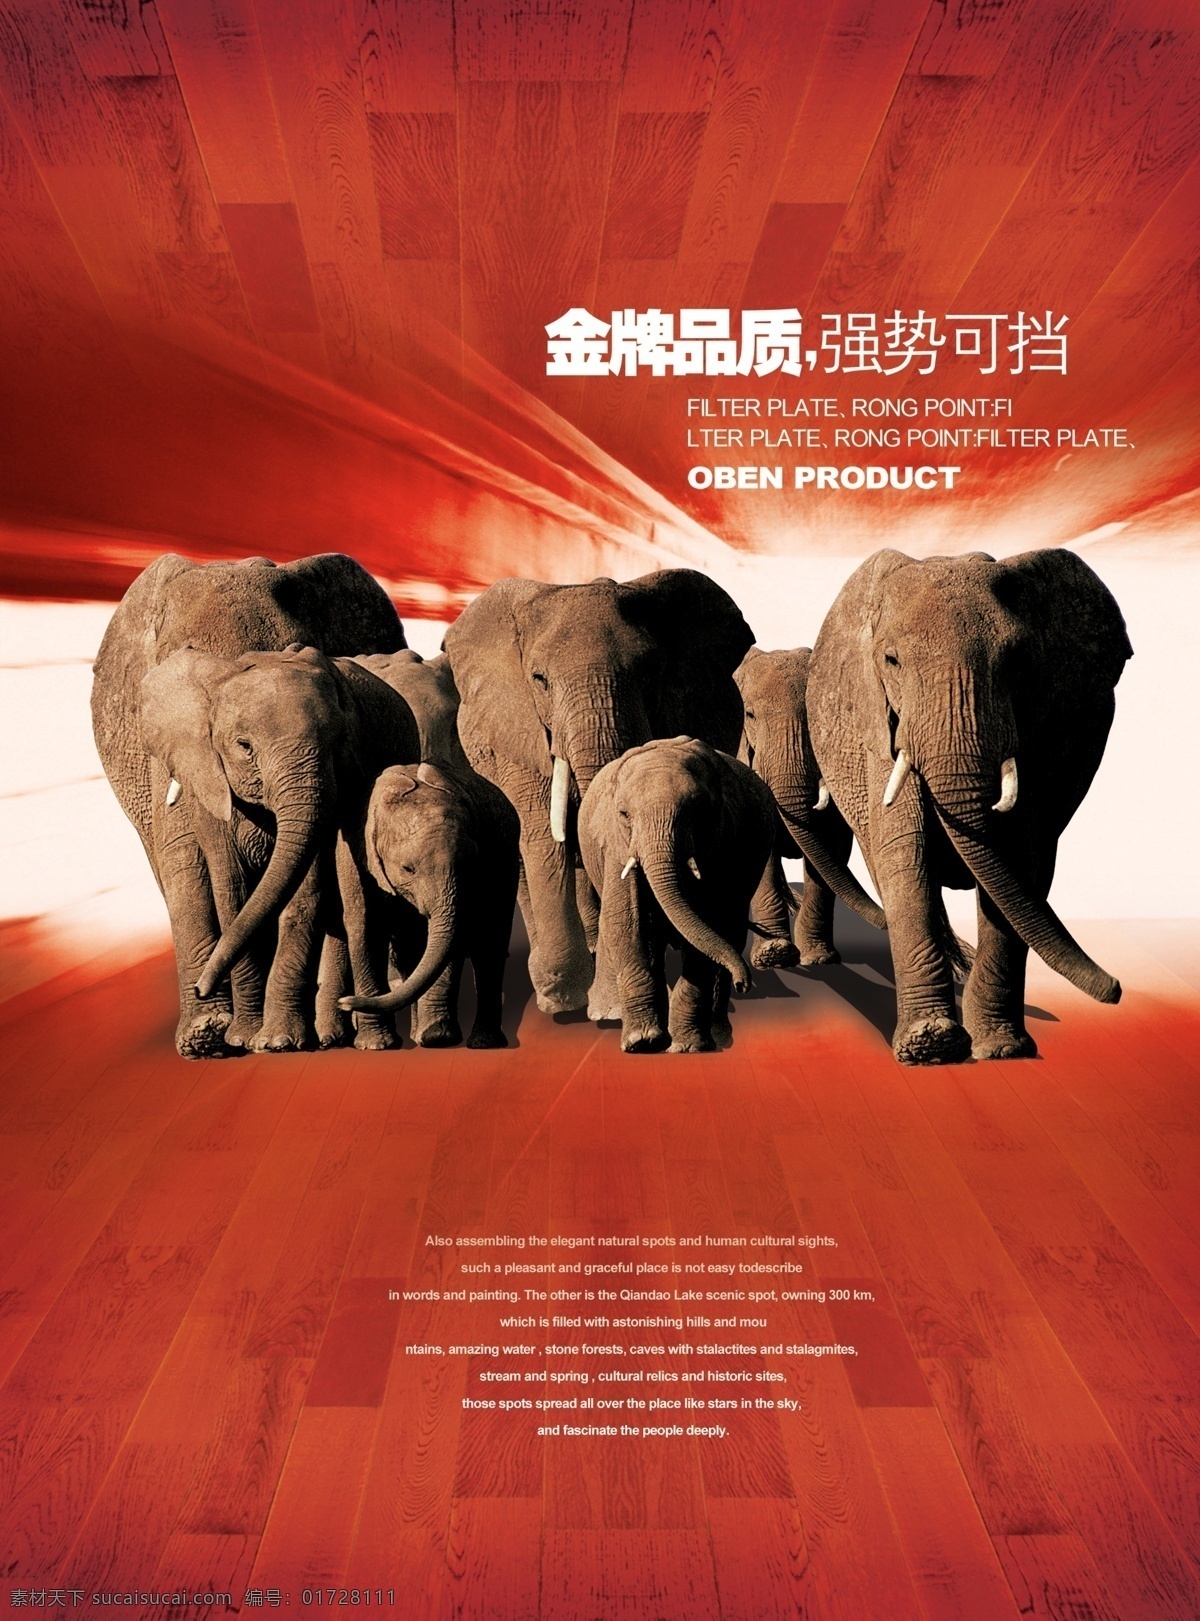 金牌 品质 海报 设计素材 金牌品质 强势可挡 大象 海报下载 红色